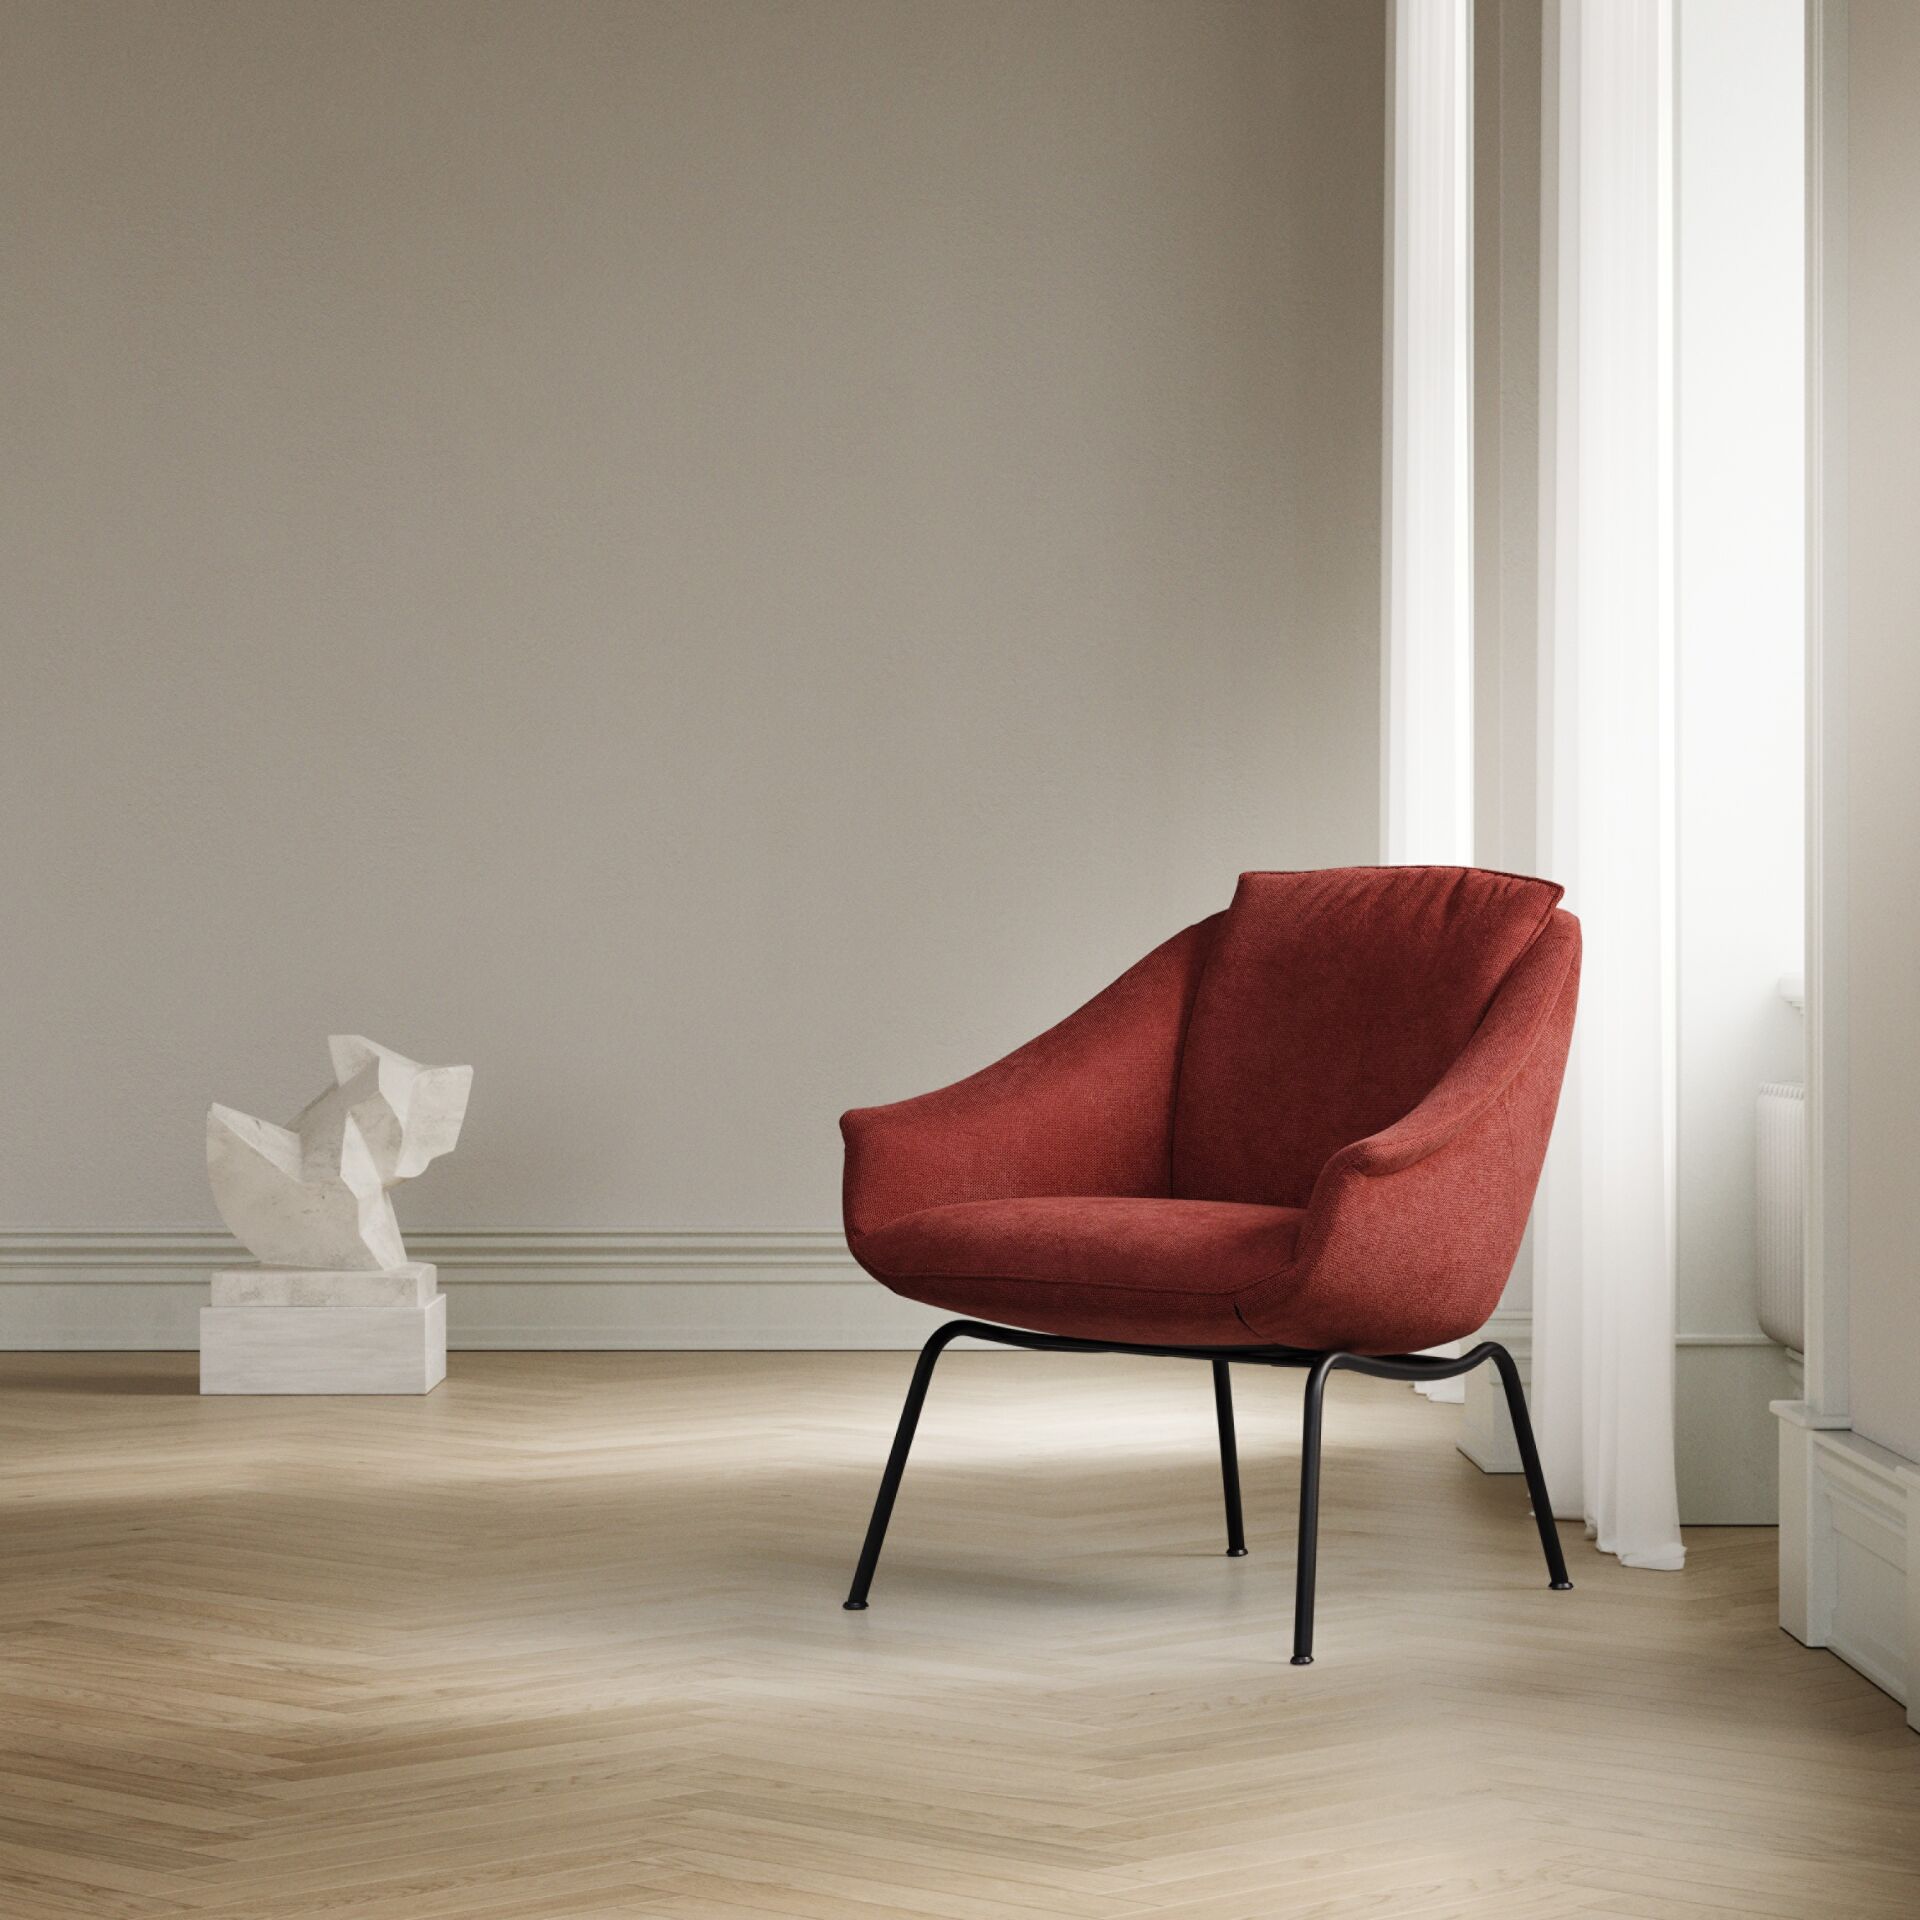 Topform fauteuil Cincin in rood Haverkort Interieurs 